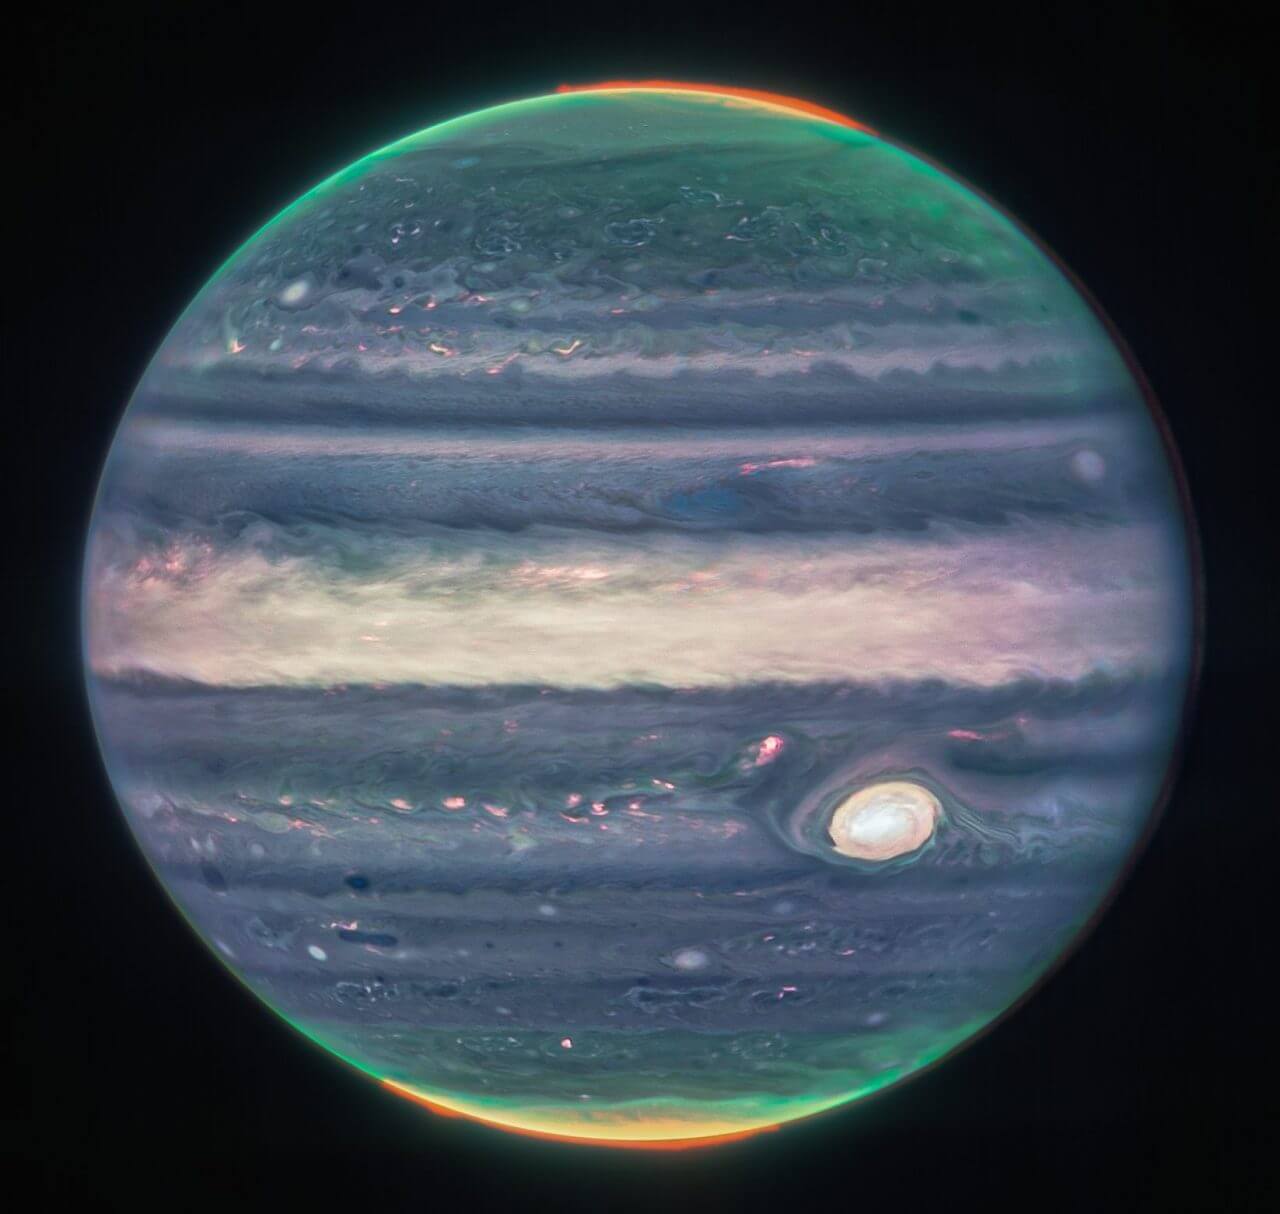 ウェッブ宇宙望遠鏡が撮影した疑似カラーの「木星」【今日の宇宙画像】